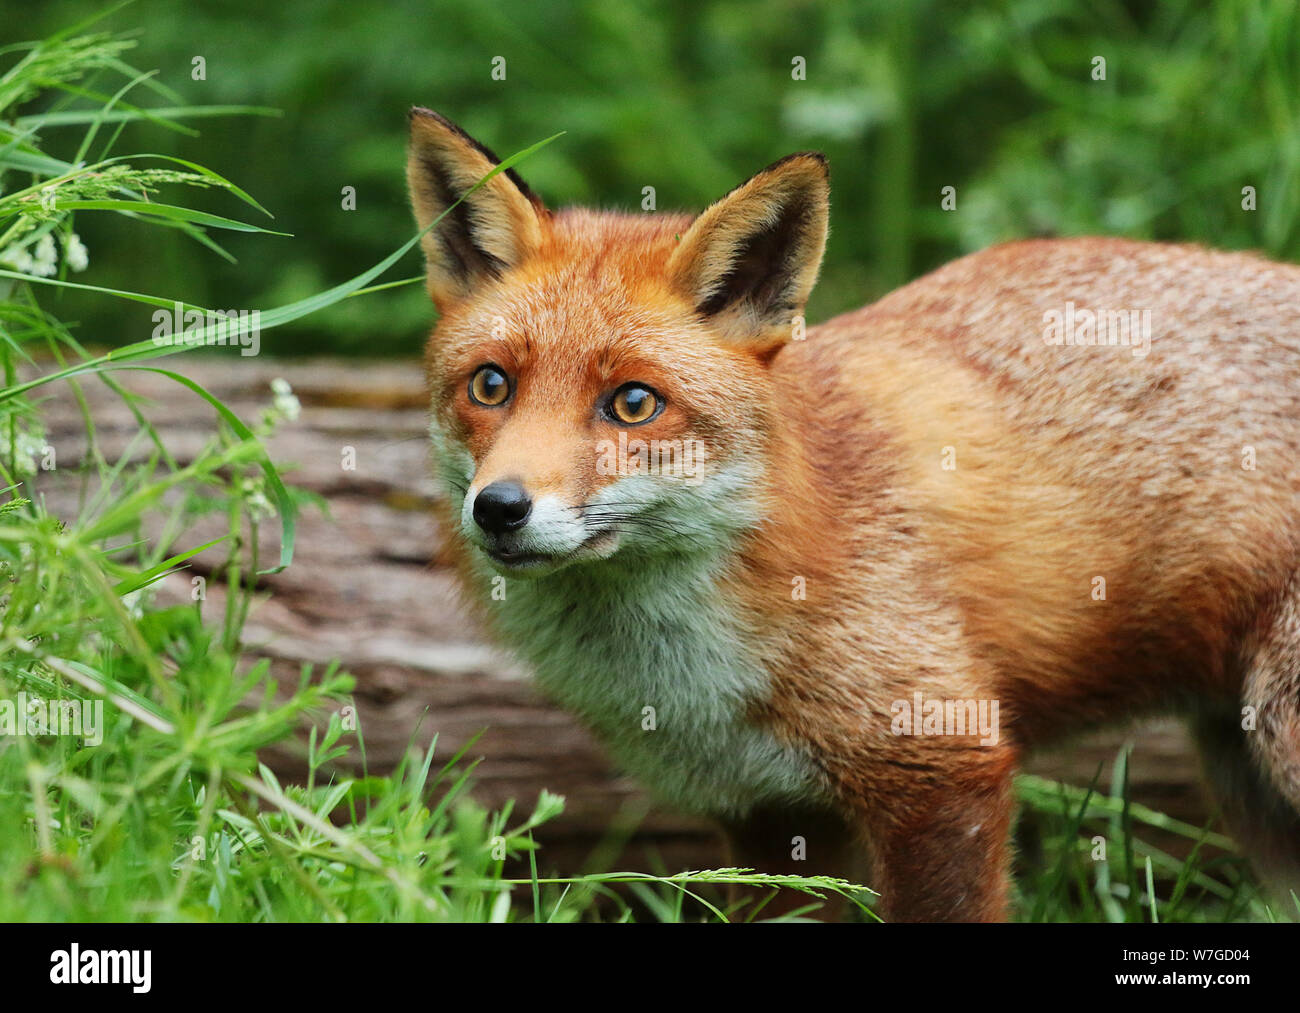 Le renard roux (Vulpes vulpes) : est une espèce emblématique de la faune. Avec sa fourrure rouge queue touffue et c'est juste beau à regarder. Banque D'Images